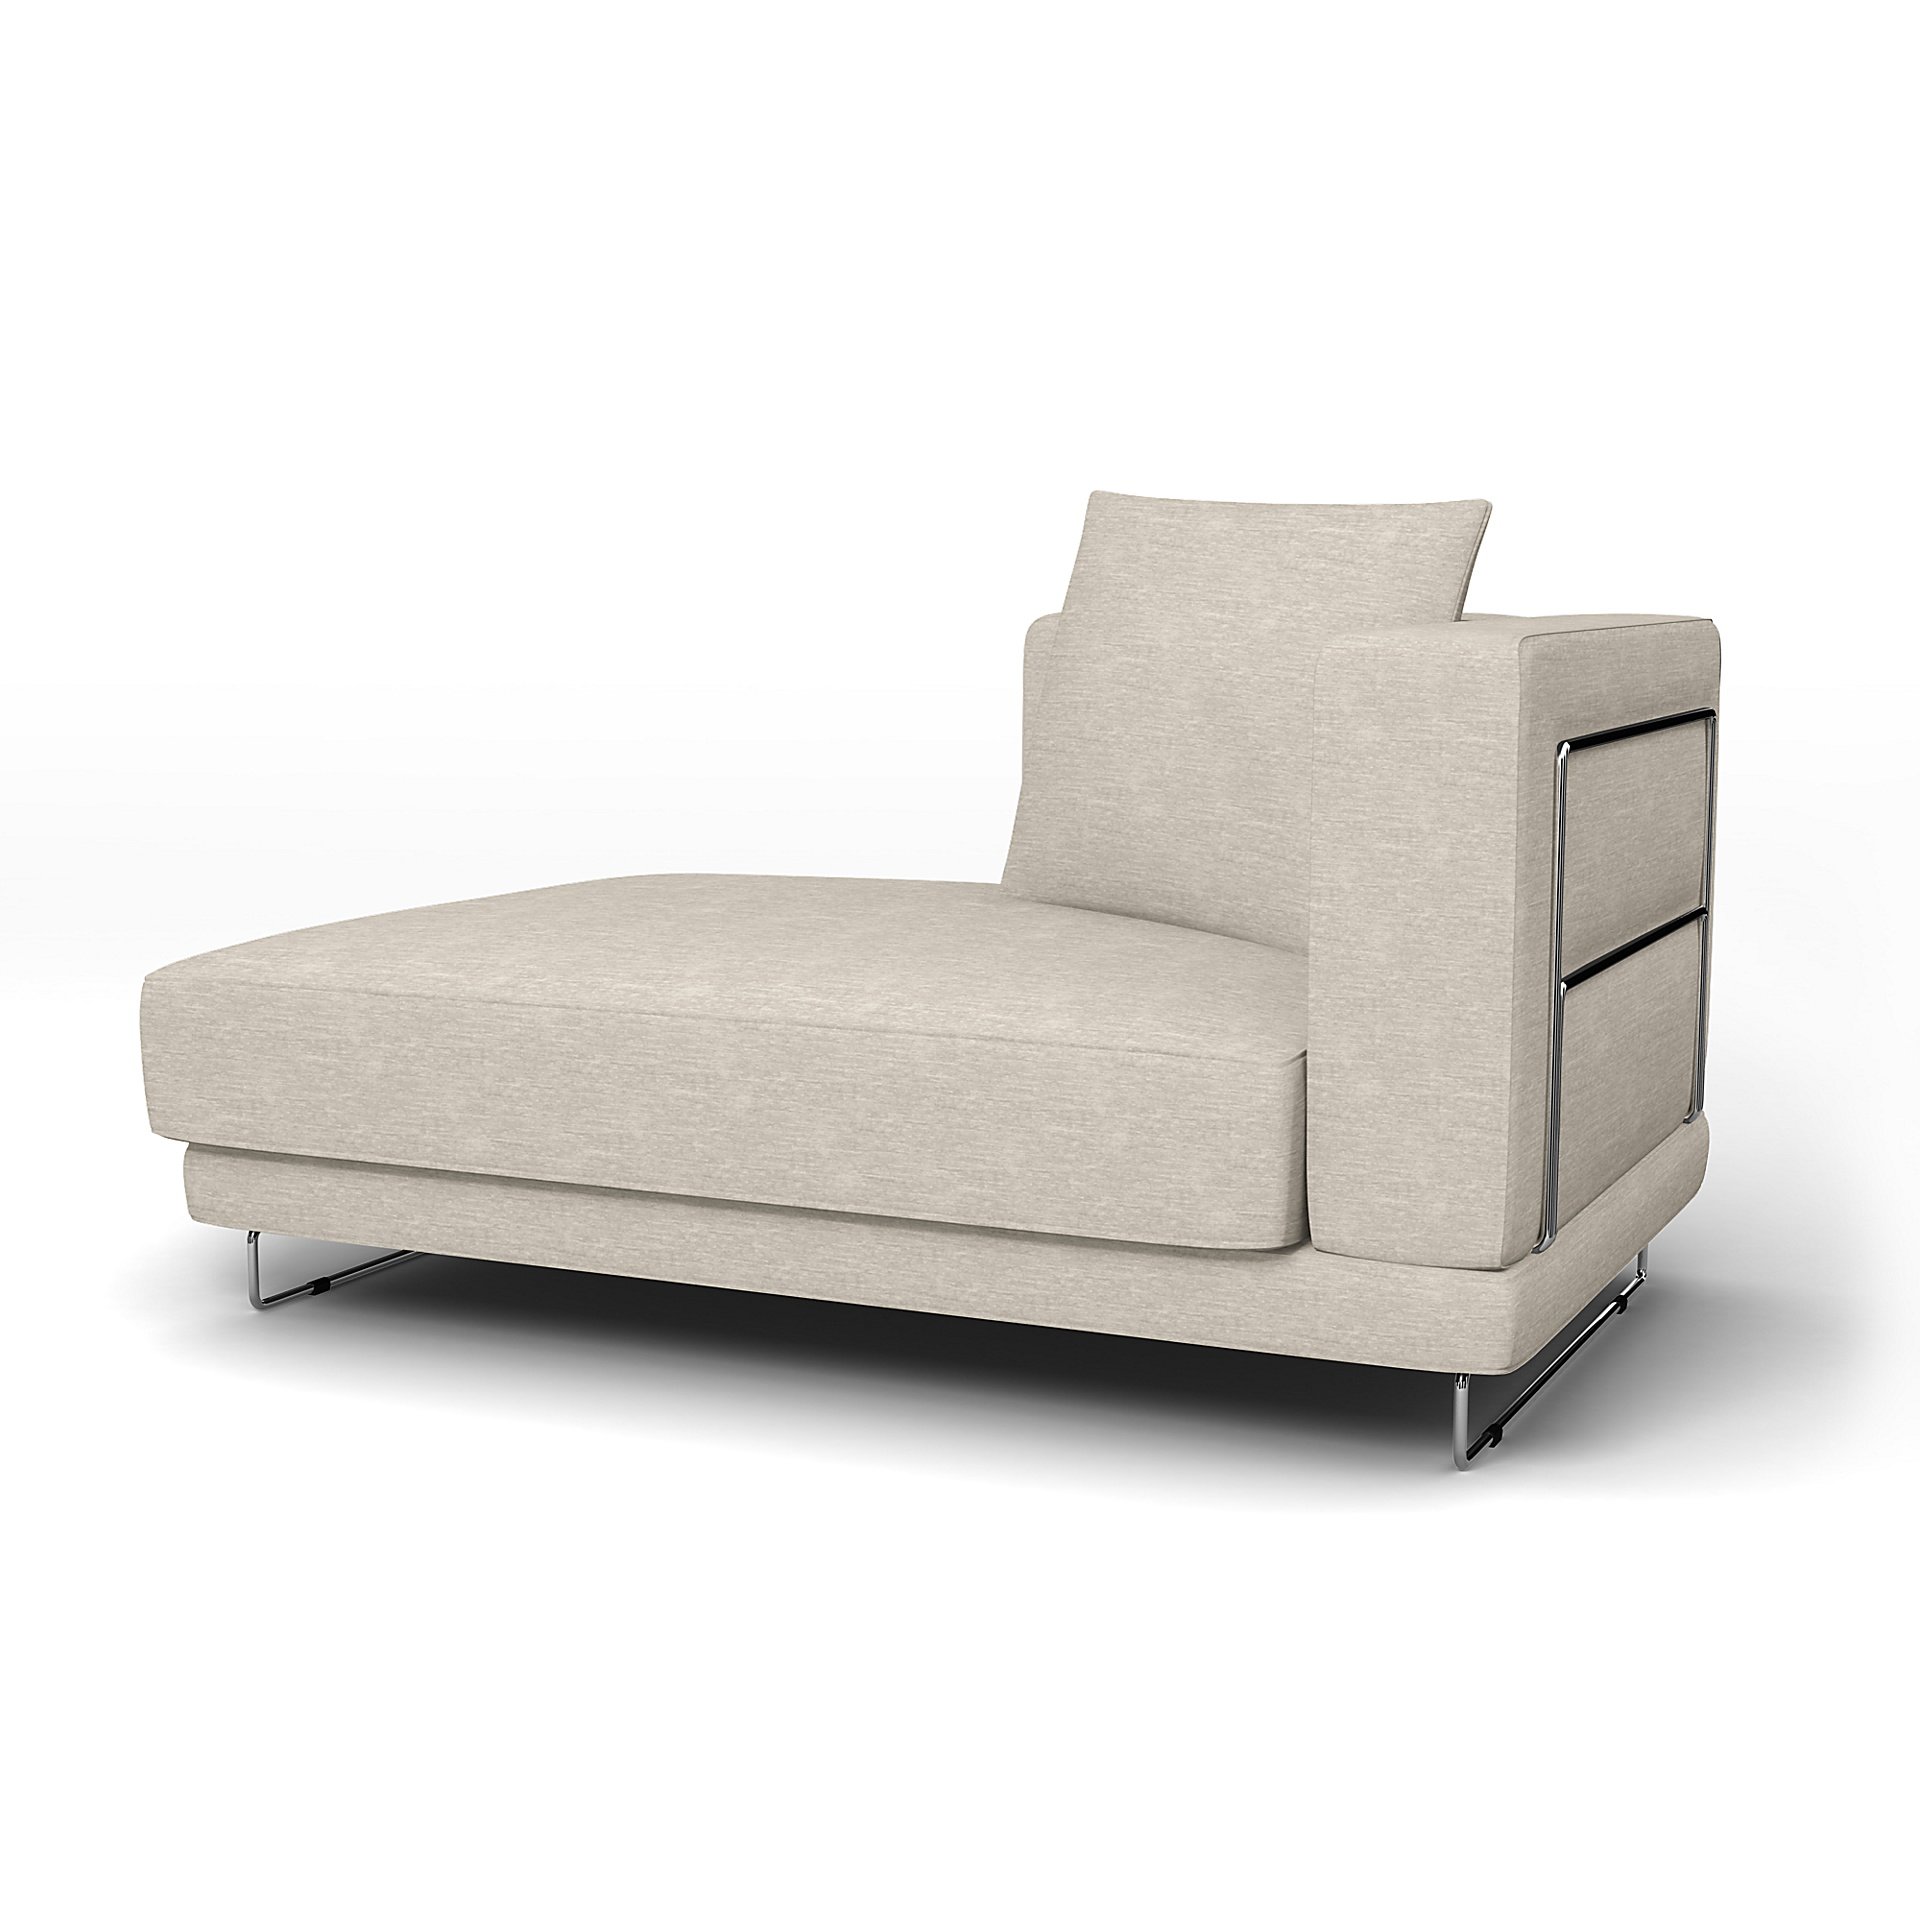 IKEA - Tylosand Chaise with Left Armrest Cover, Natural White, Velvet - Bemz